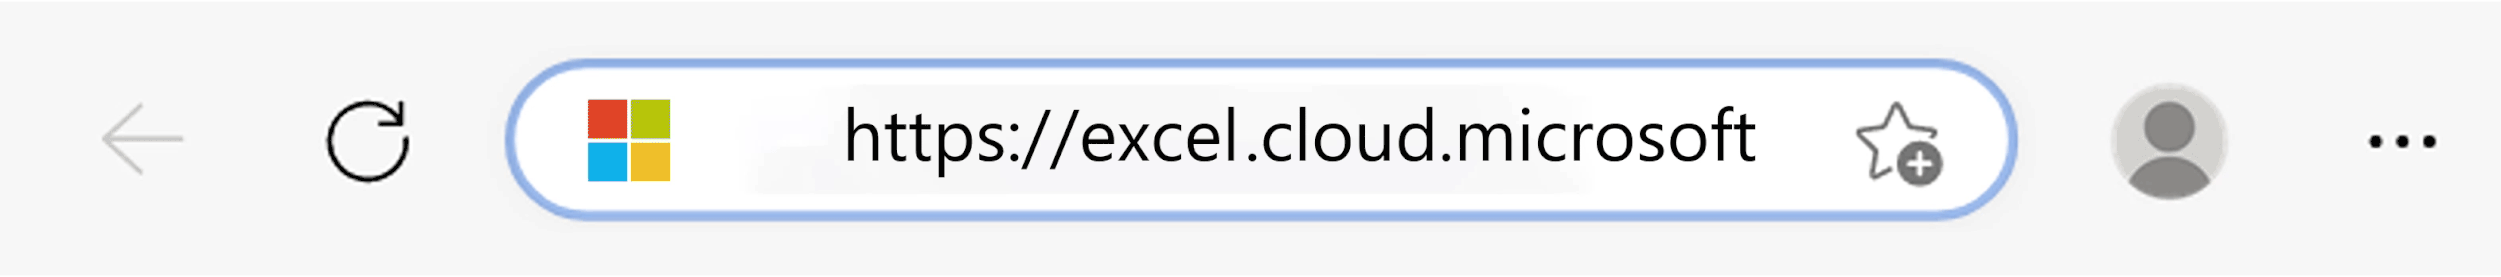 cloudmicrosoft url